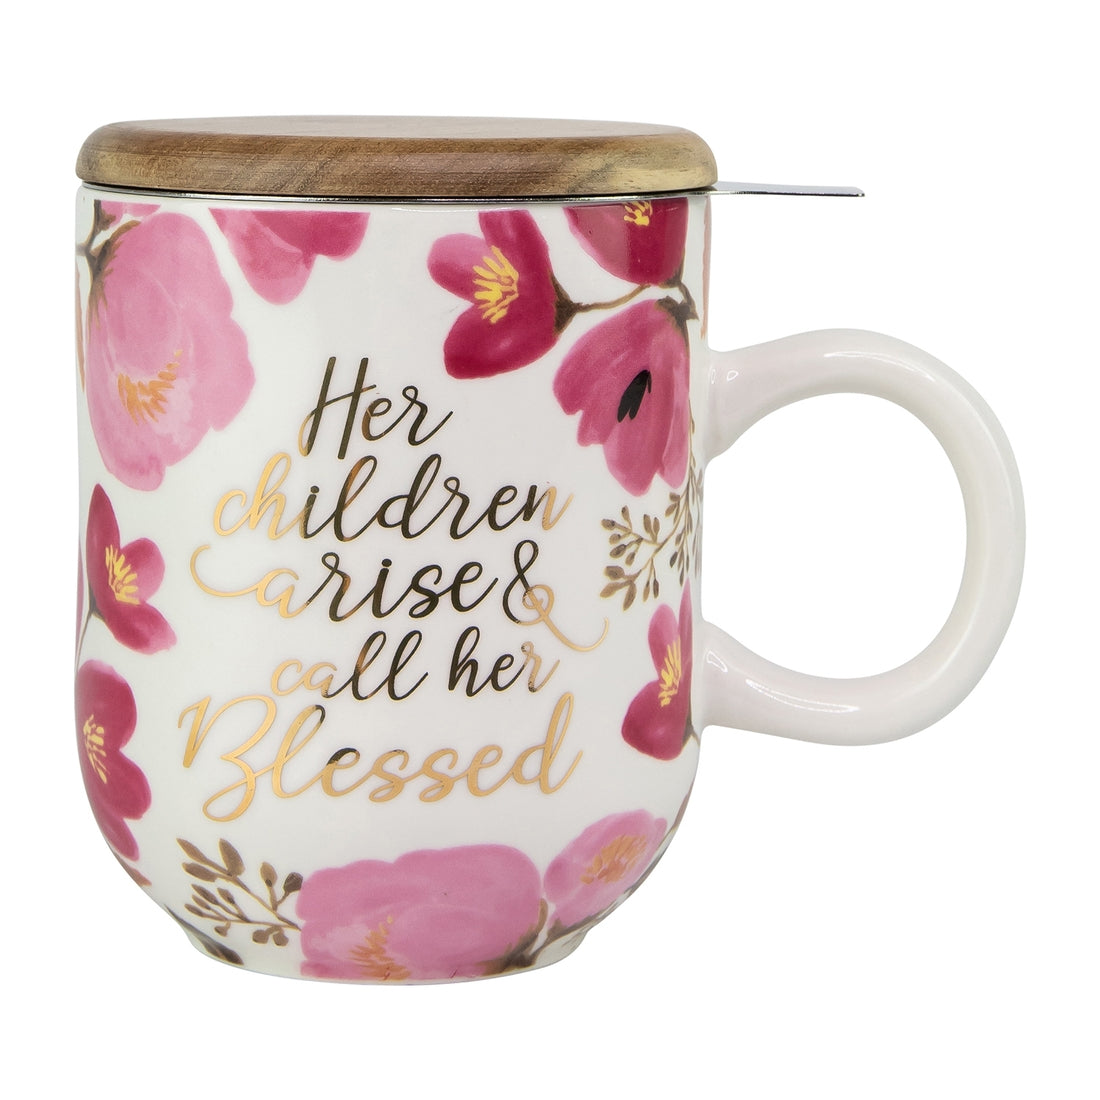 Her Children Arise Ceramic Tea Mug